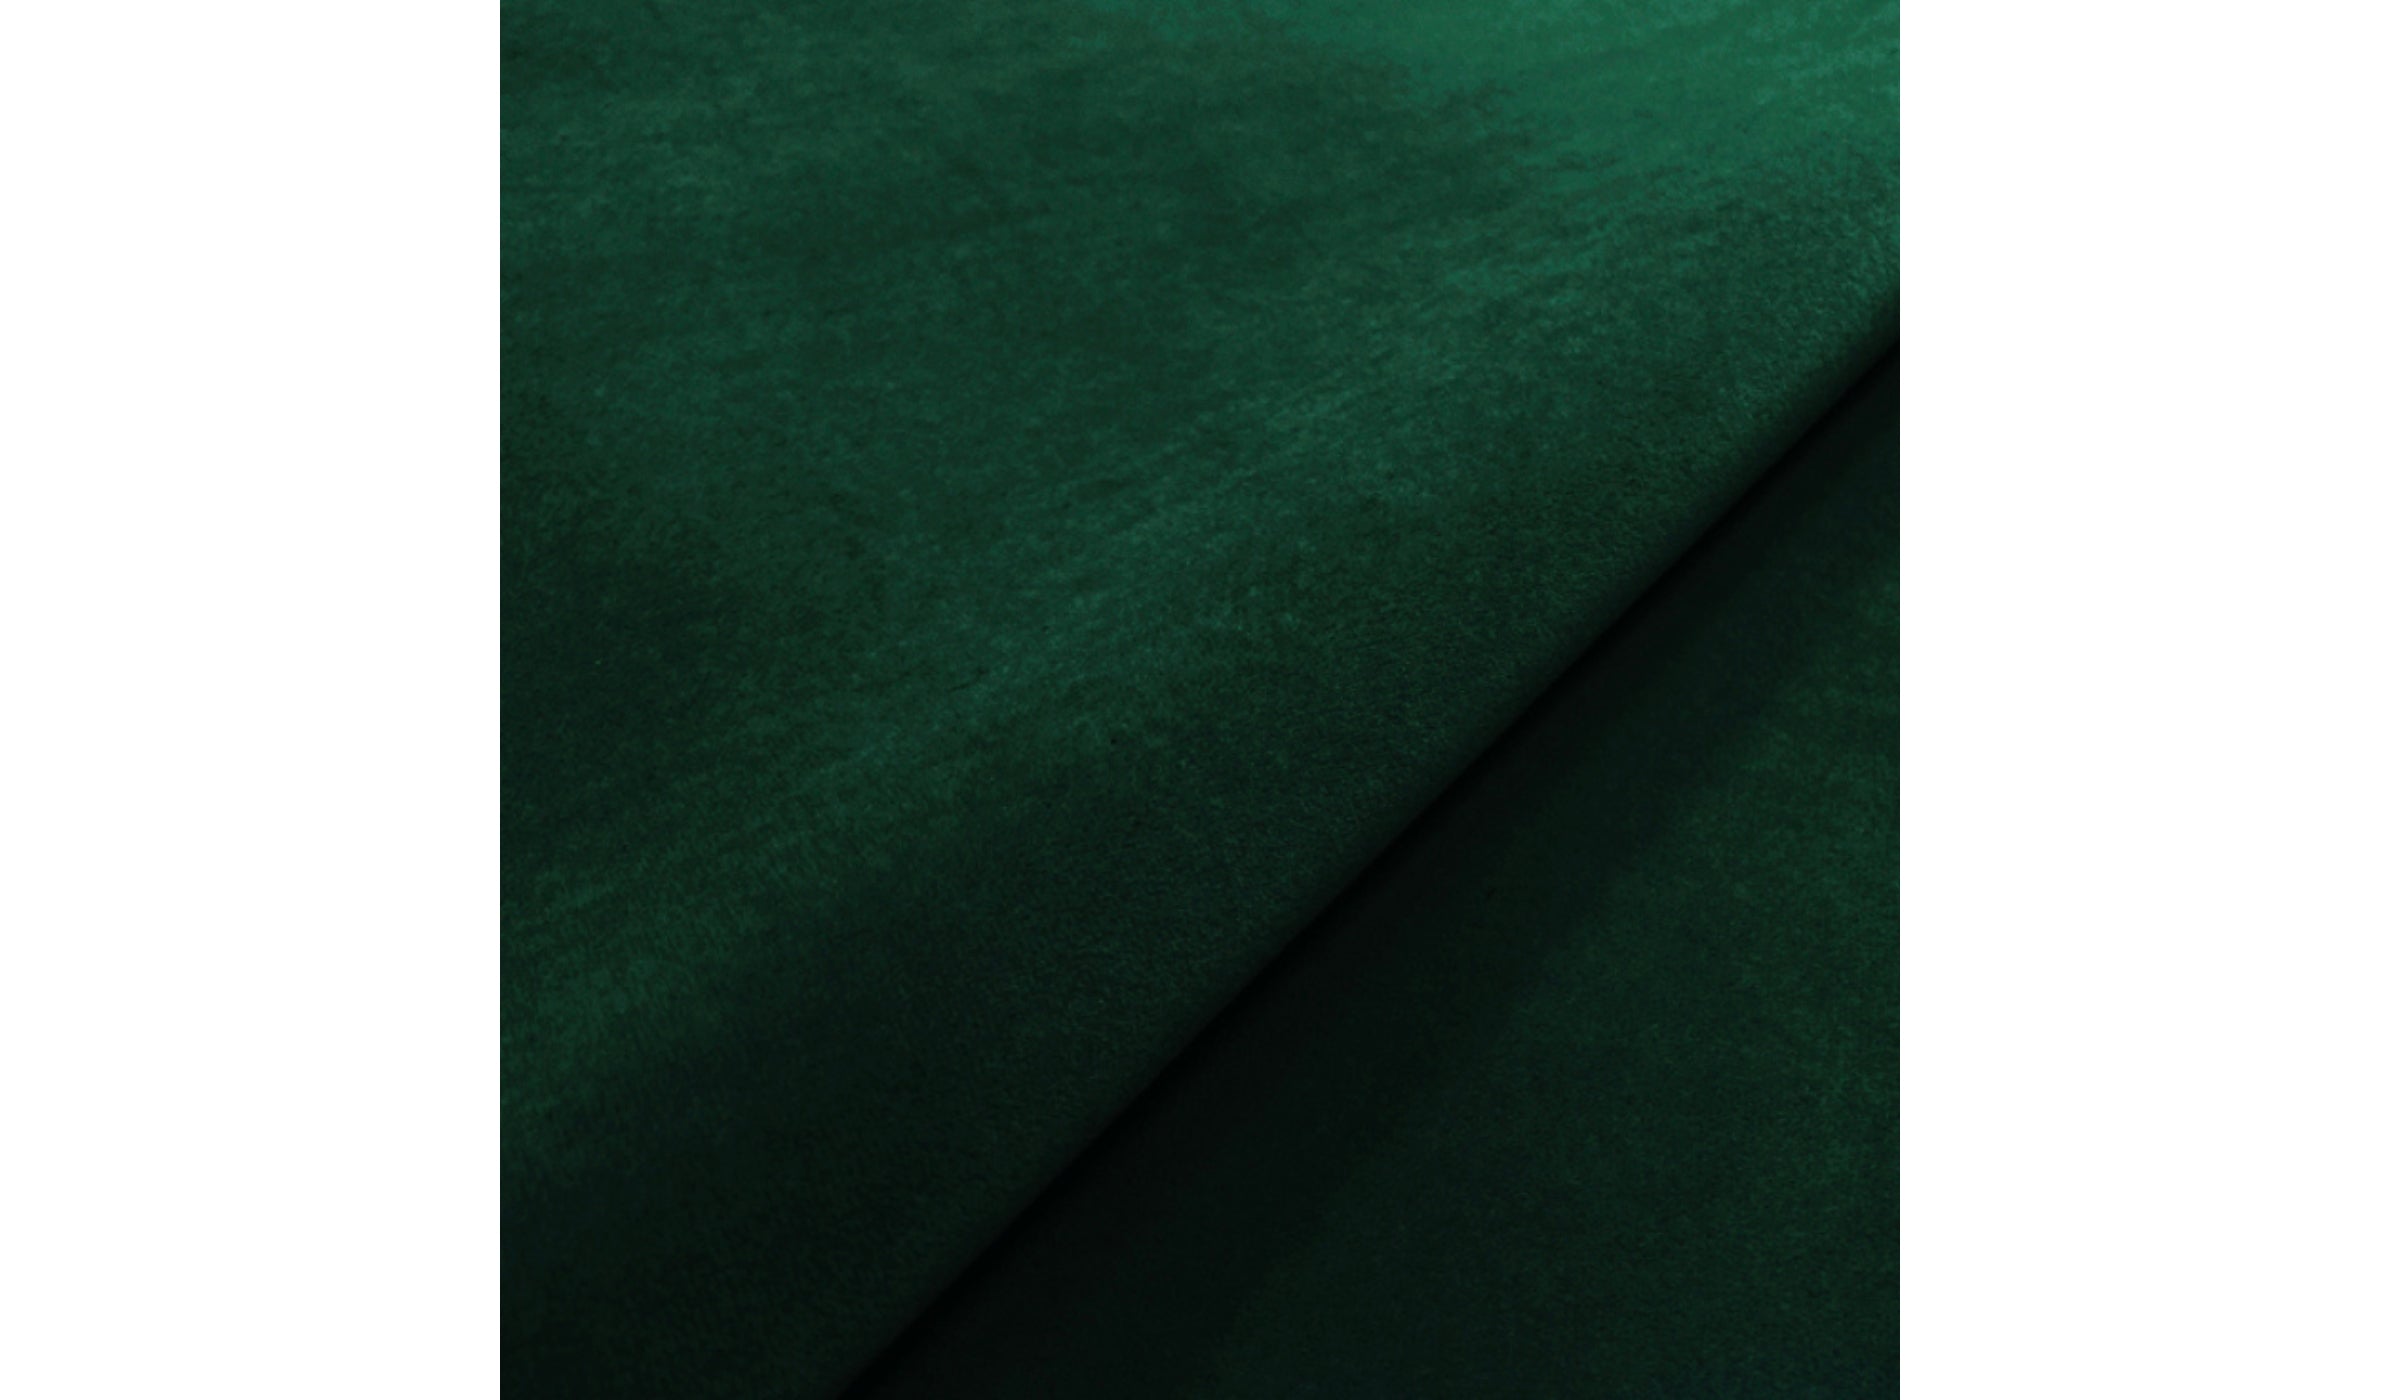 Fauteuil-366 - Fauteuil à bascule, tissu velours, vert--NOVINEA-366 CONCEPT